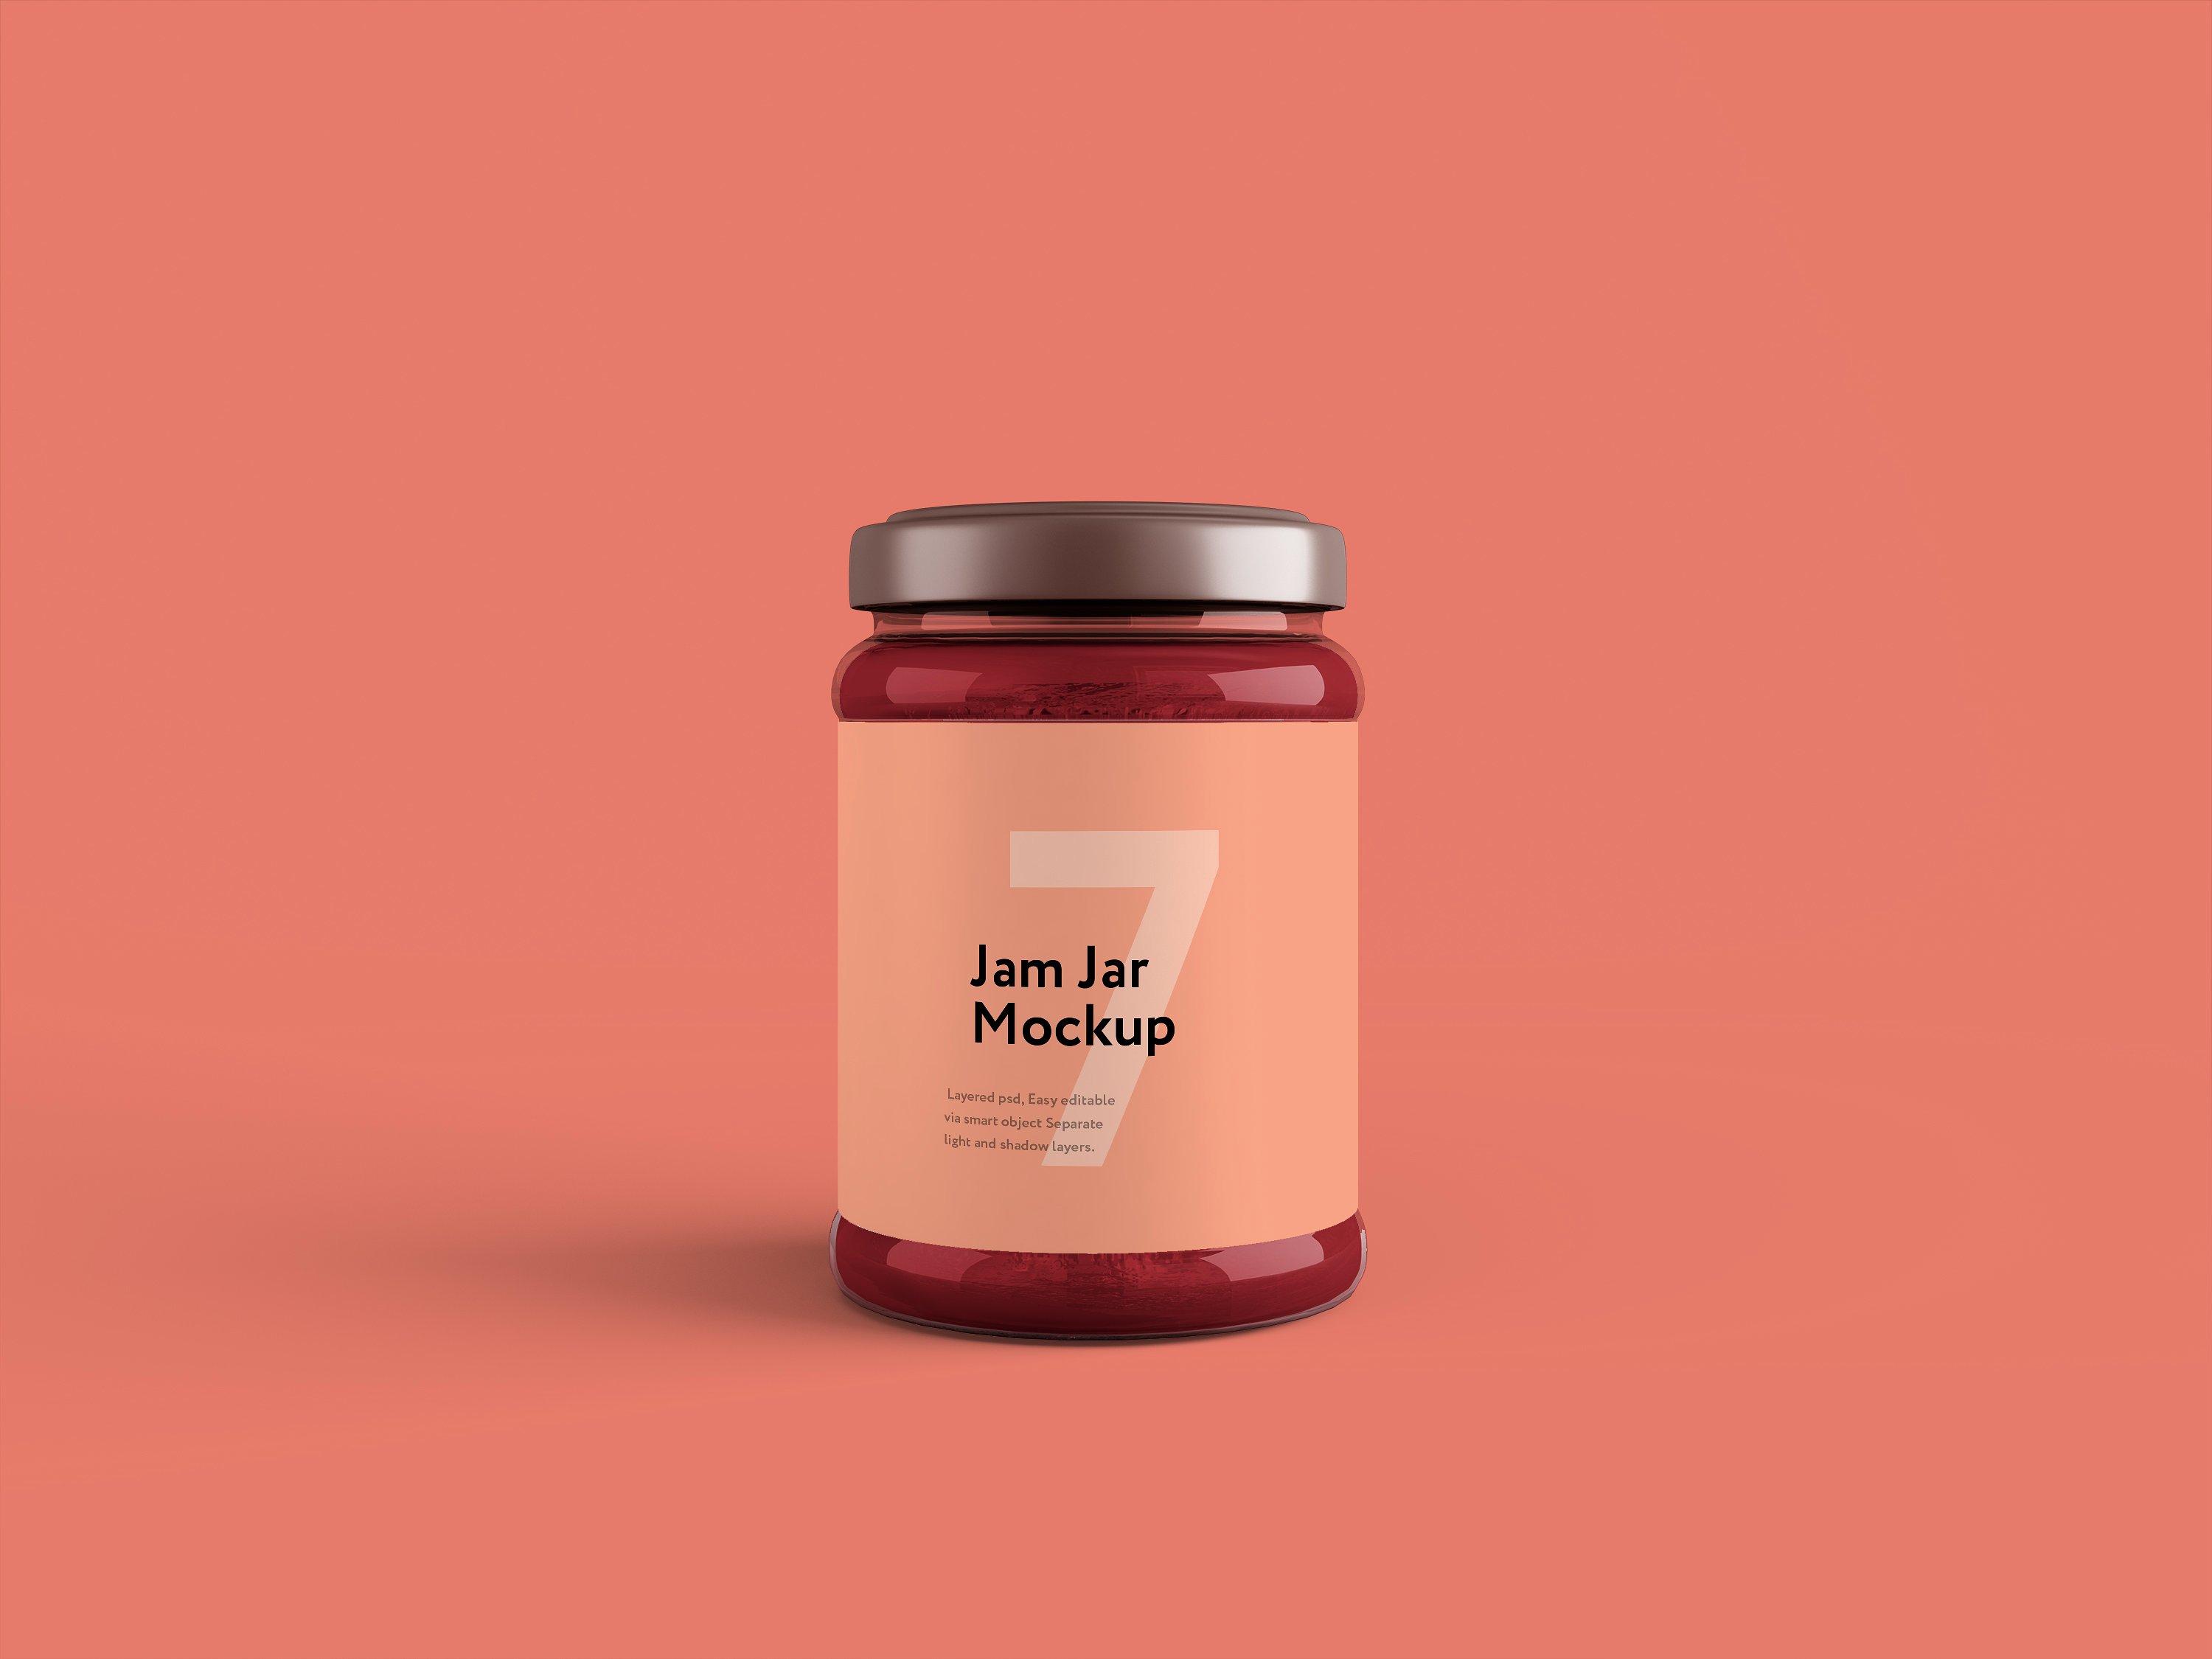 粉色果酱玻璃瓶外观设计效果图样机模板 Jam Jar Mockup插图1